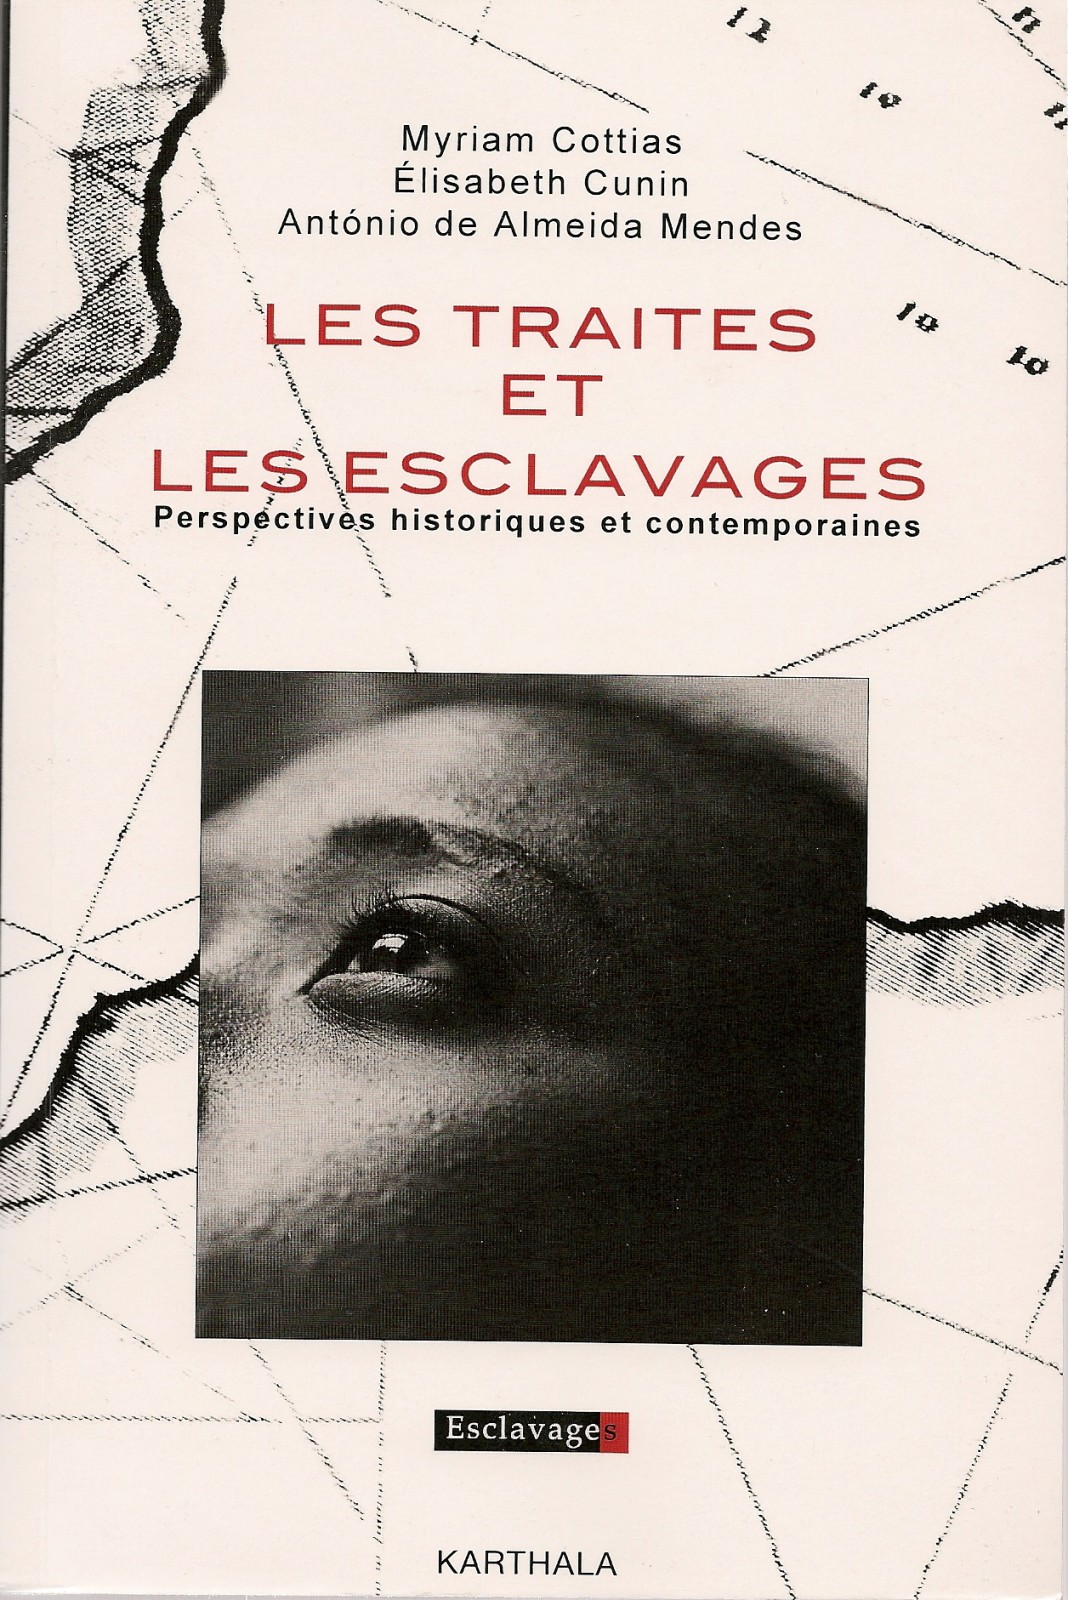 英语法语翻译服务 出版翻译服务国际奴隶制研究中心 CIRESC